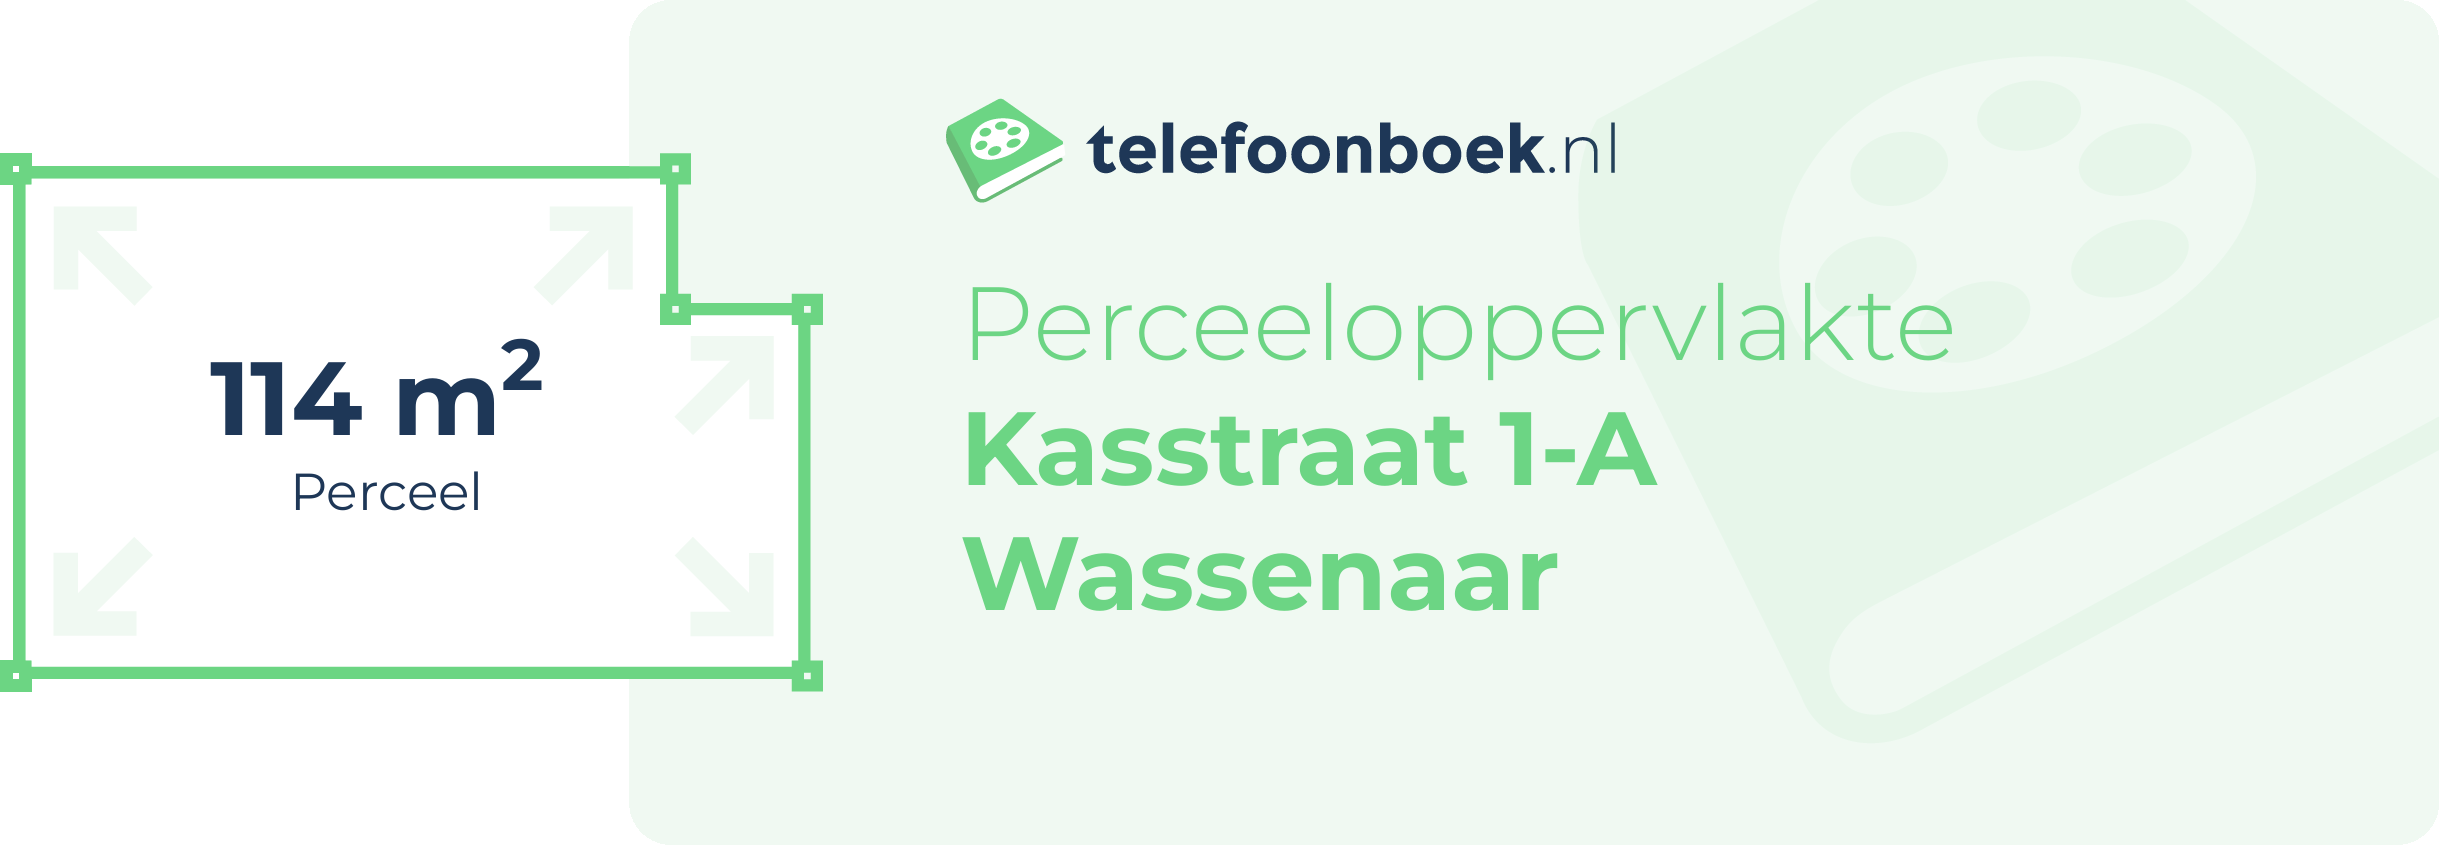 Perceeloppervlakte Kasstraat 1-A Wassenaar